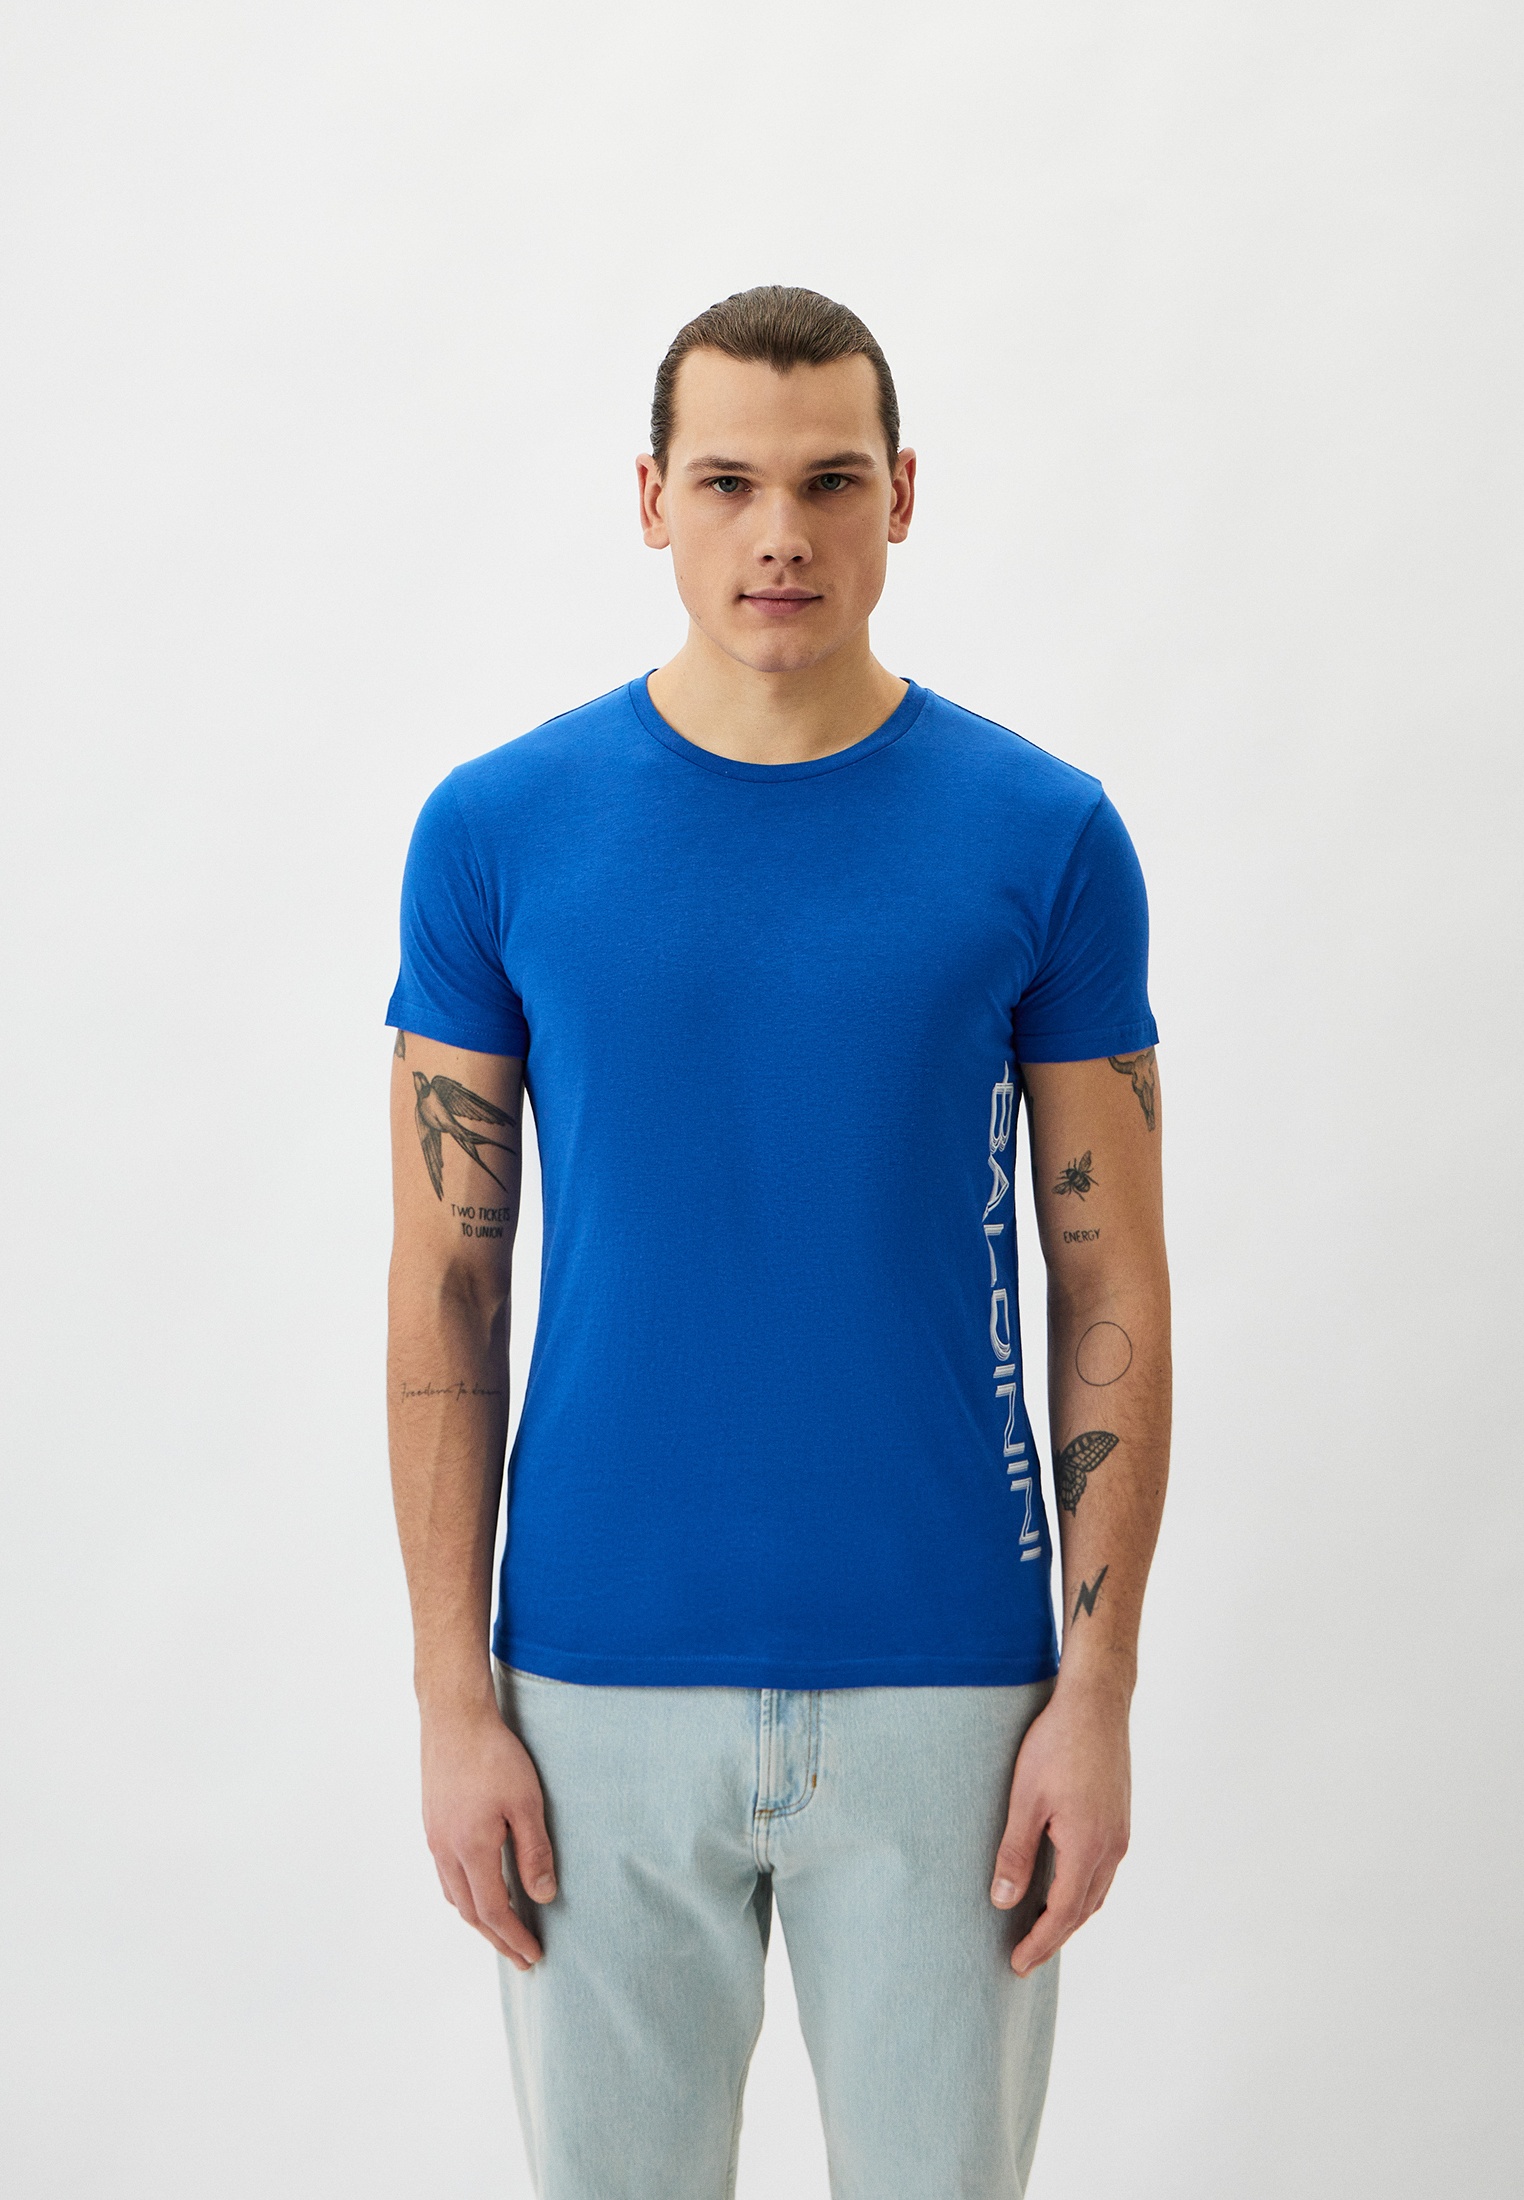 Мужская футболка Baldinini (Балдинини) B-OLM-M018: изображение 5